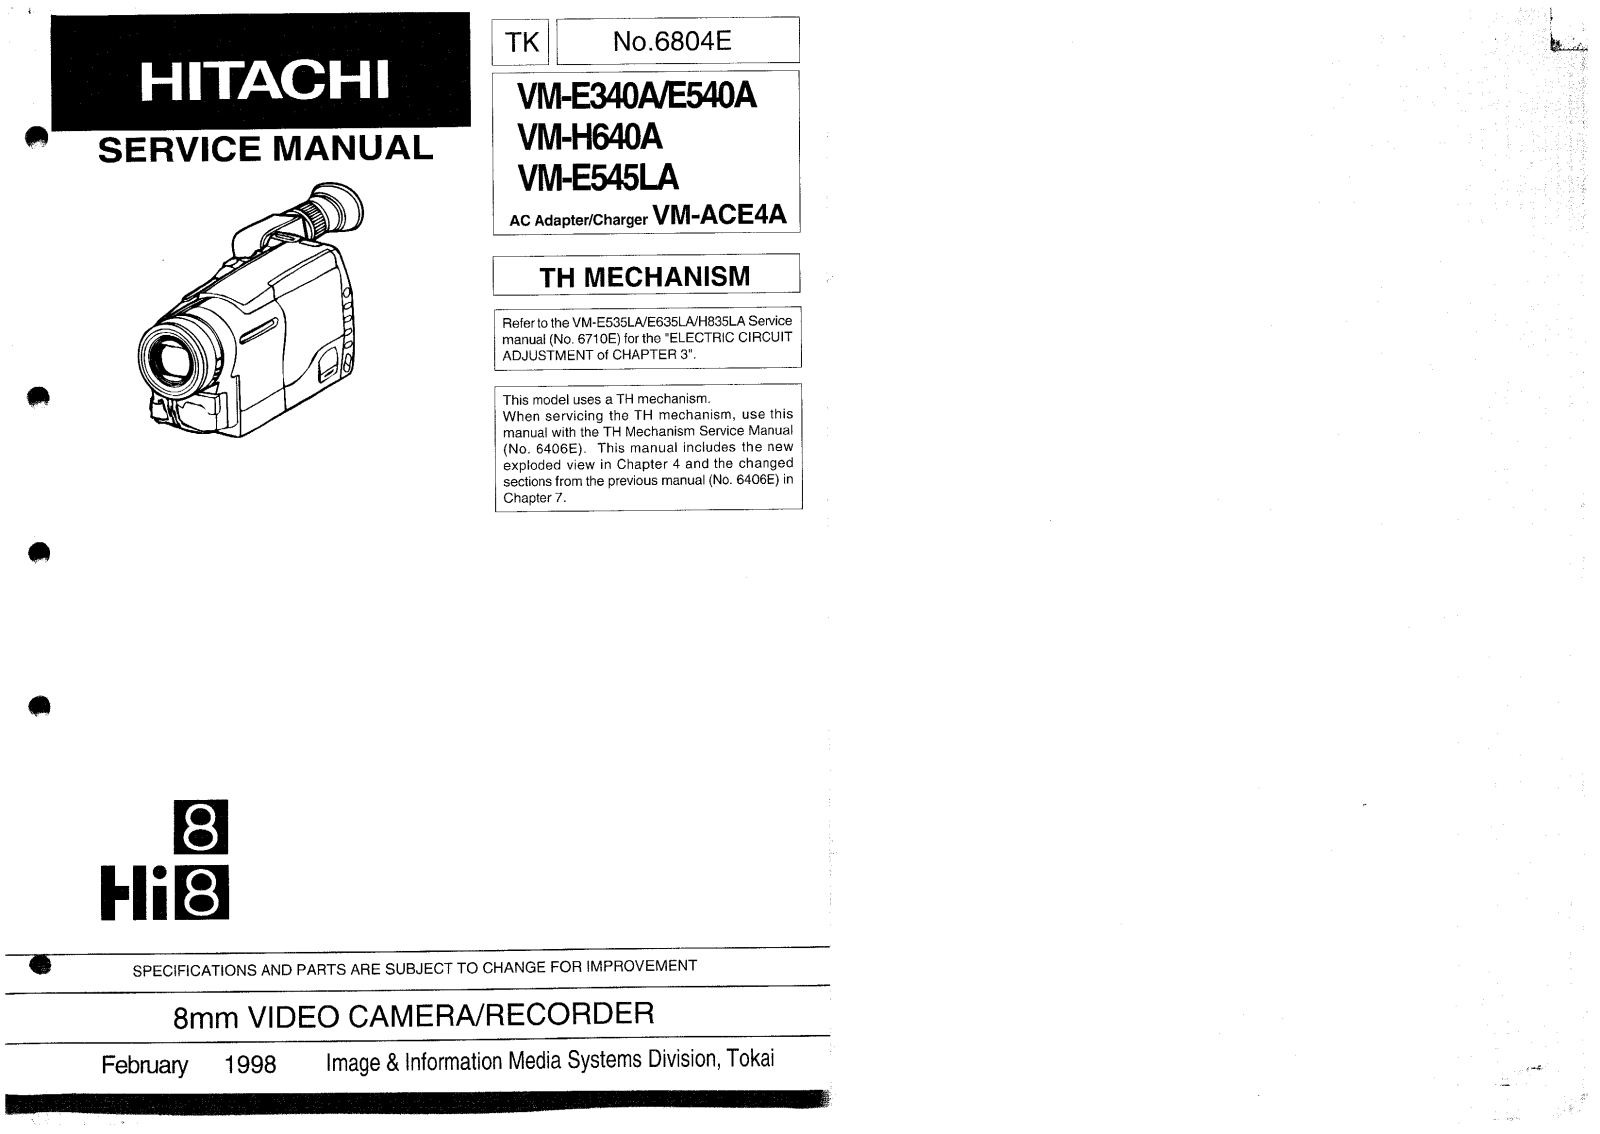 Hitachi VM-H640A, VM-E340LA, VM-E540LA, VM-E545LA Service Manual